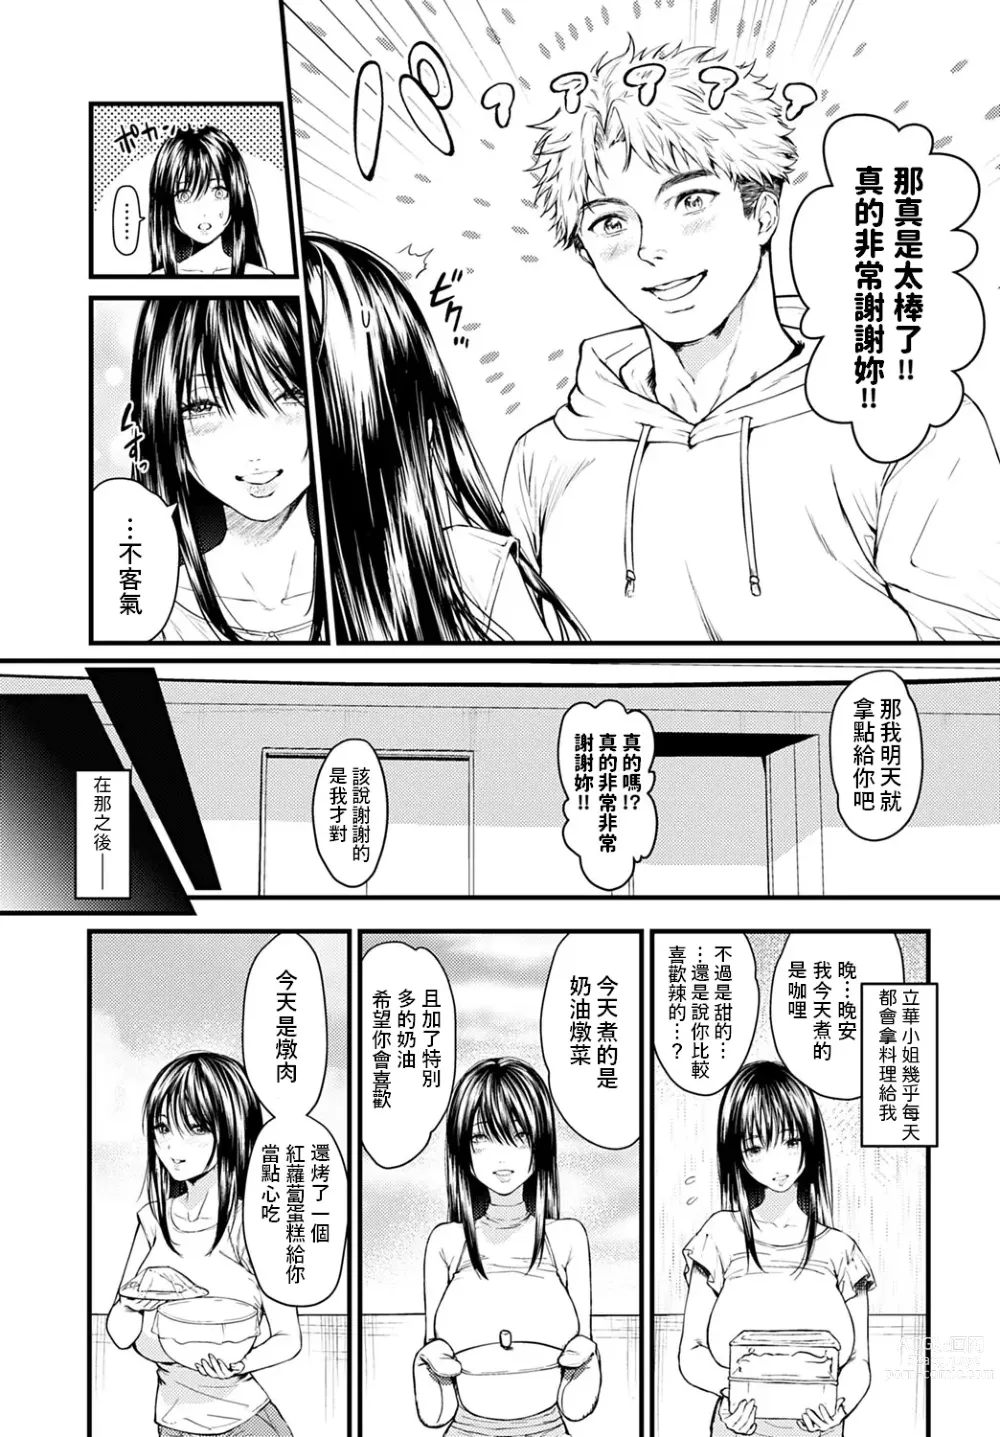 Page 3 of manga Tonari no Heya no Anata